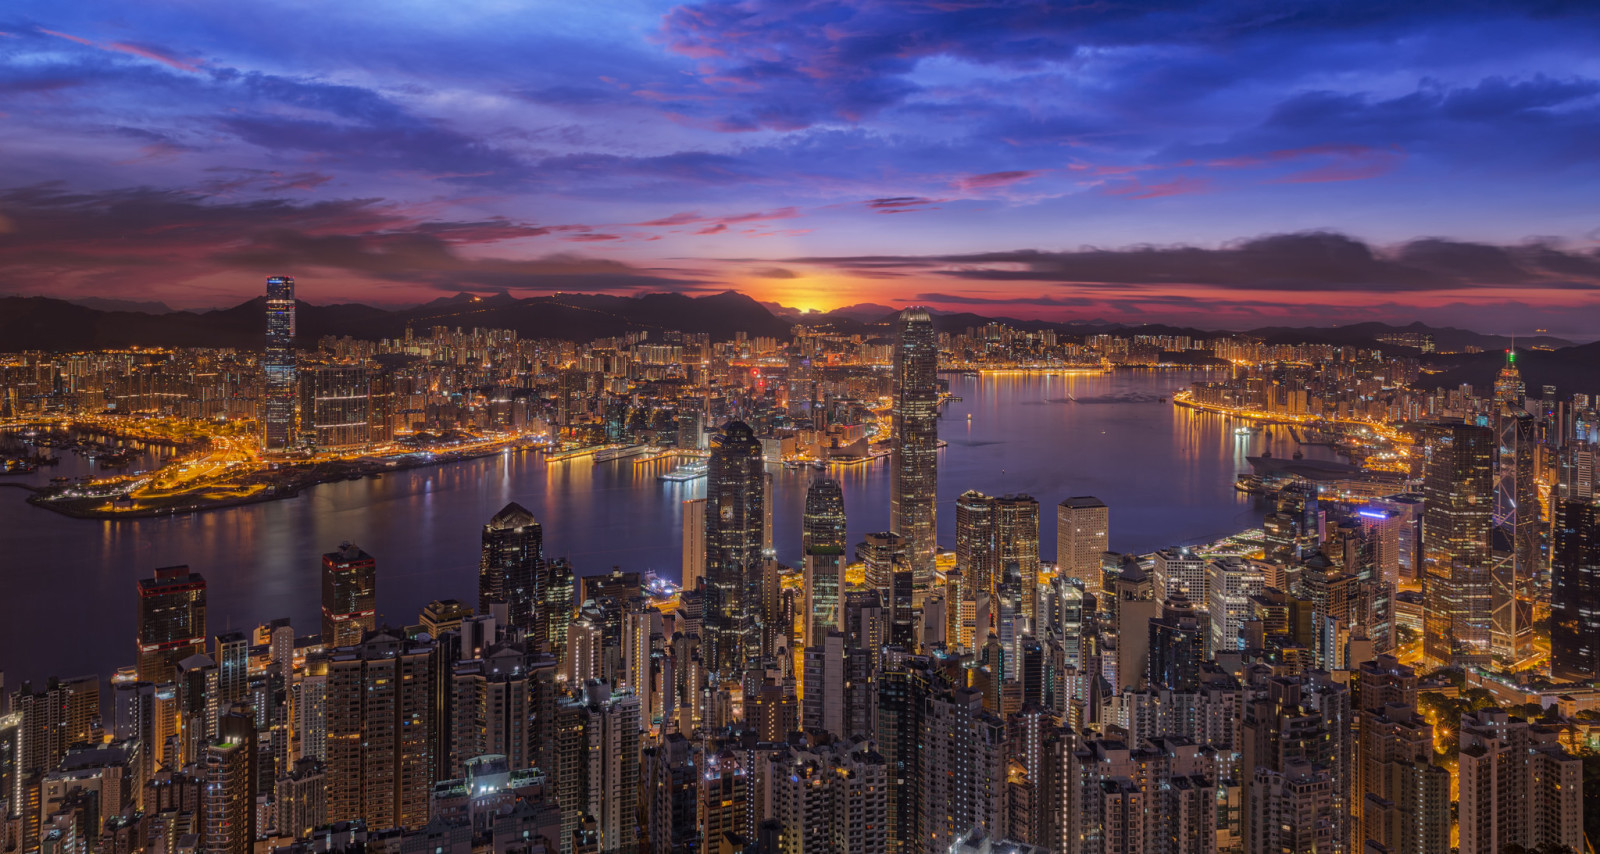 Hoàng hôn, Vịnh, Thành phố đêm, tòa nhà chọc trời, bức tranh toàn cảnh, xây dựng, Trung Quốc, Hồng Kông